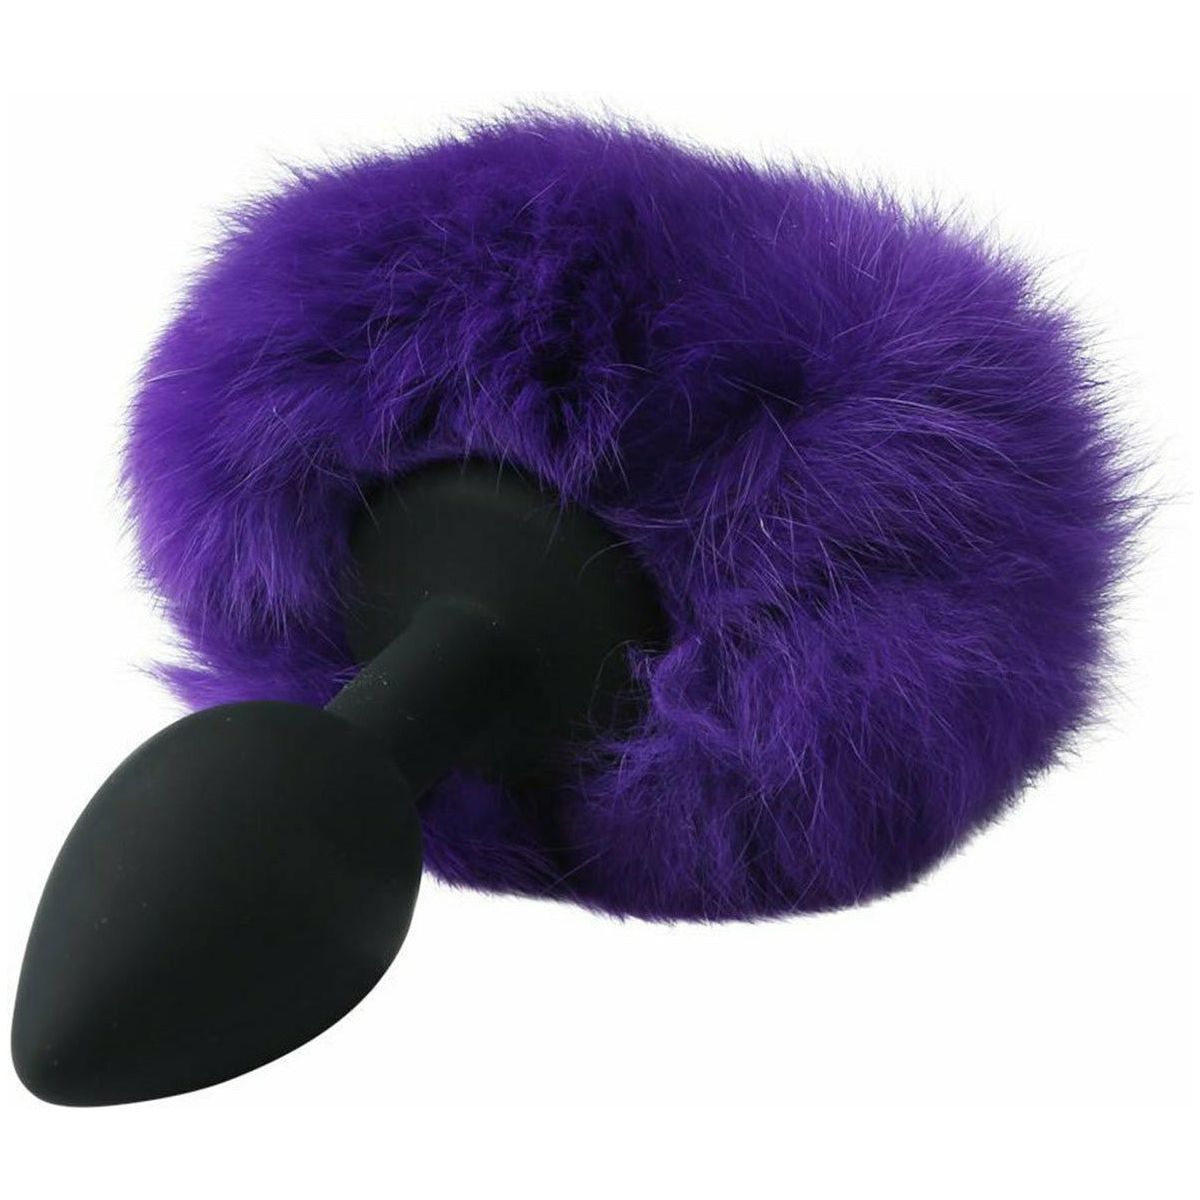 Sportsheets Sincerely - Silicone Bunny Butt Plug - Purple